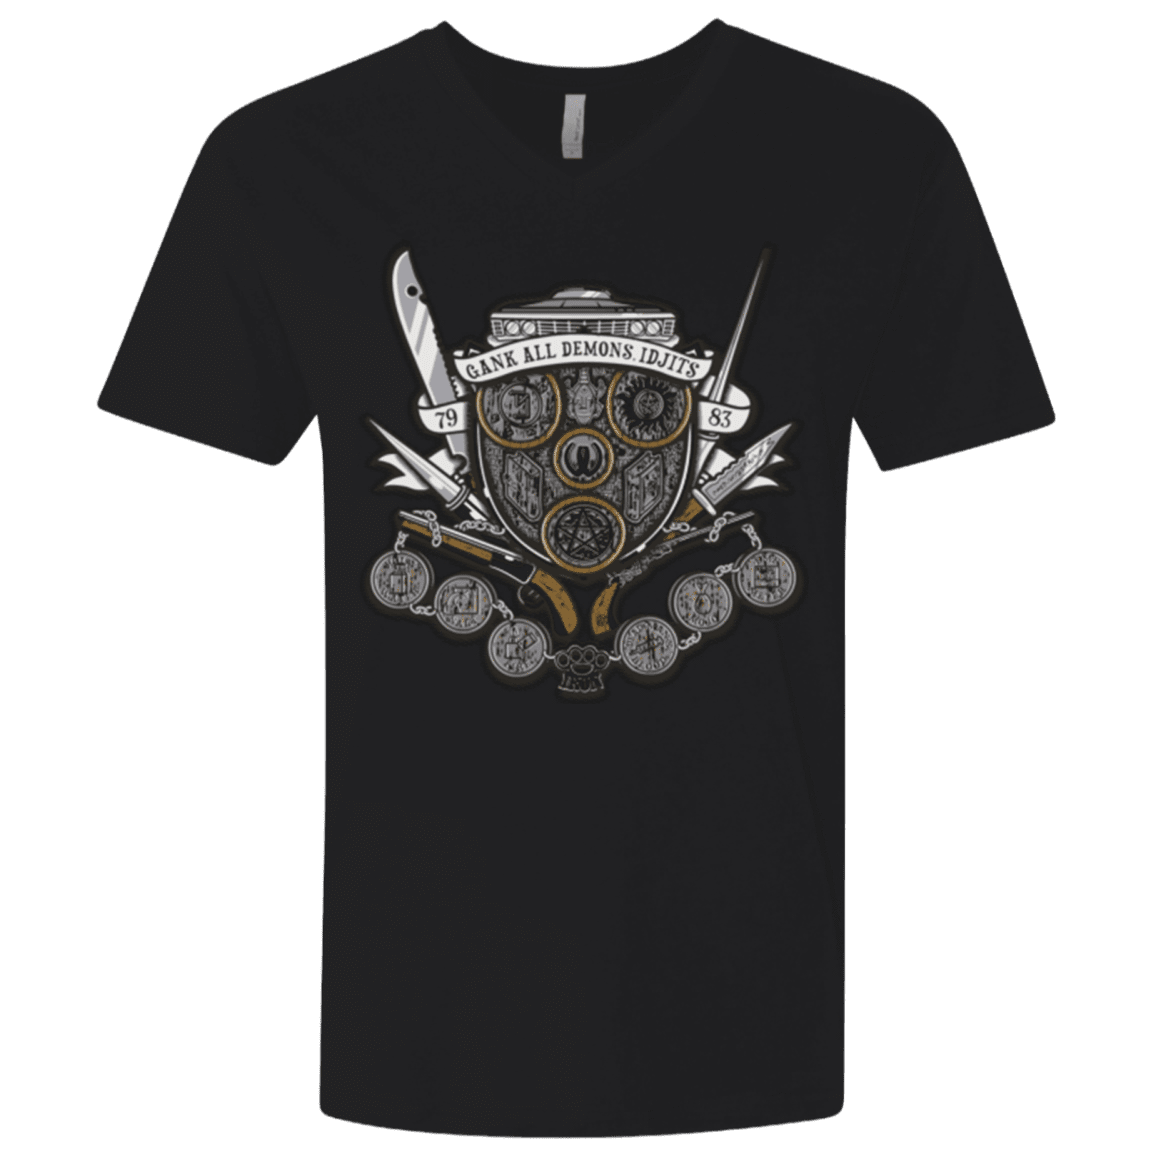 T-Shirts Black / X-Small Winchester's Crest Men's Premium V-Neck